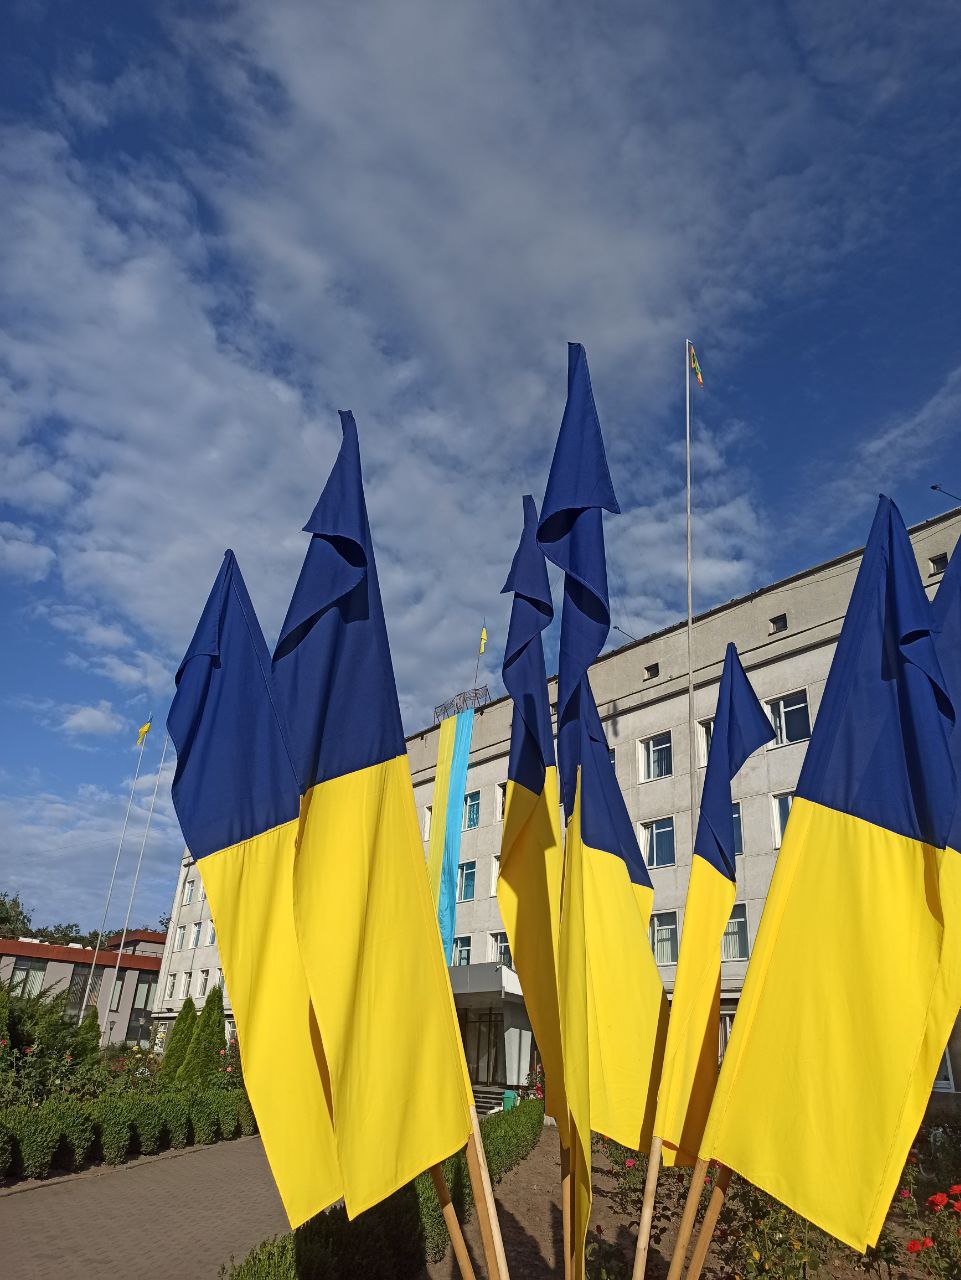 З Днем Державного Прапора та Днем Незалежності України